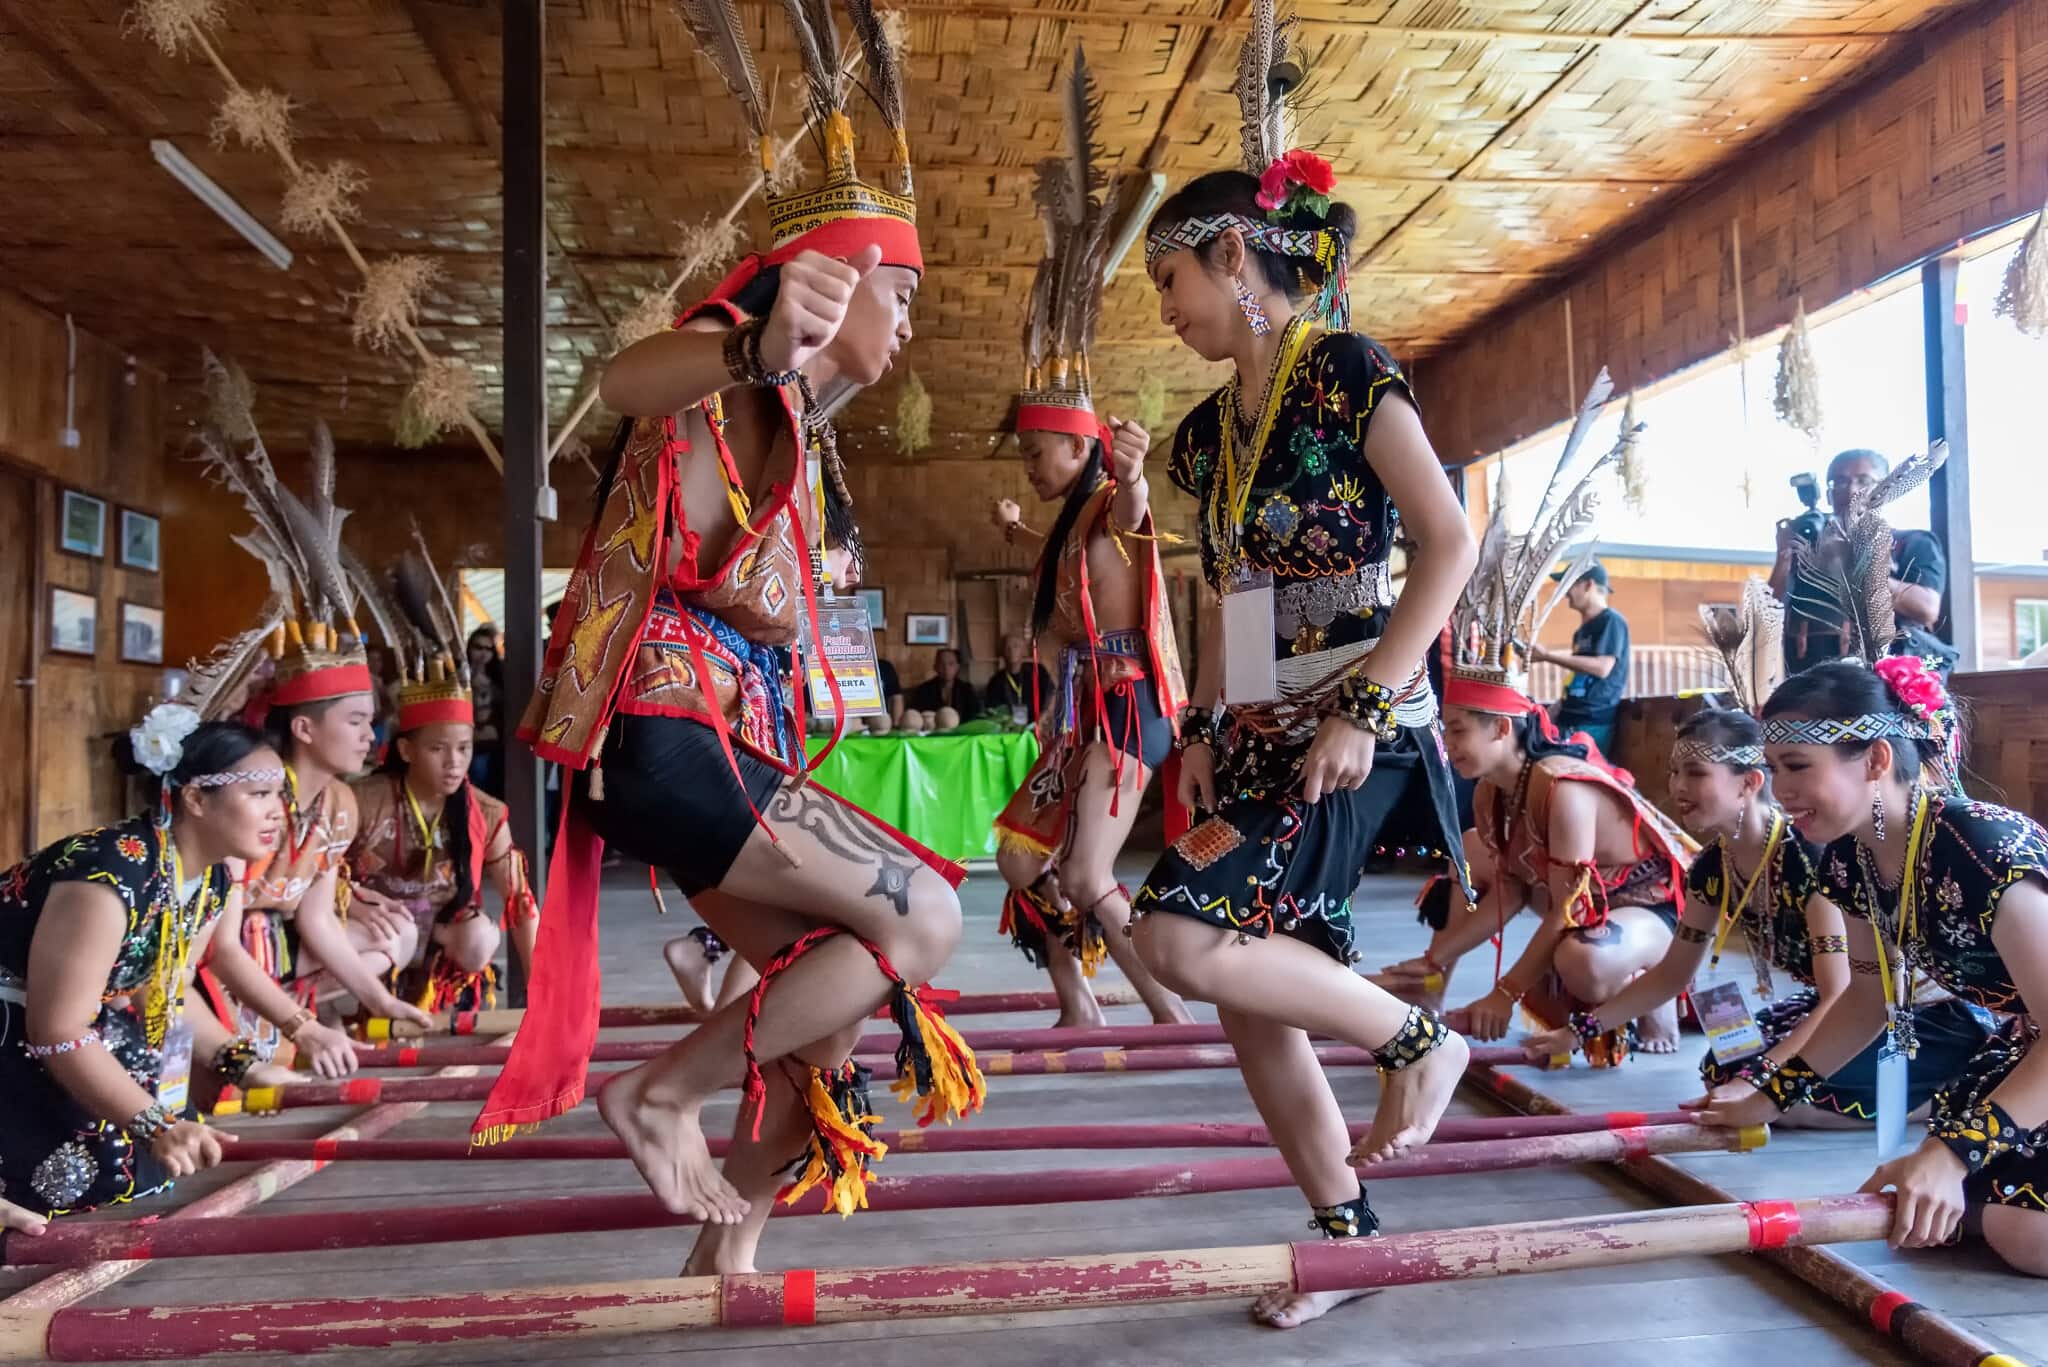 אילוסטרציה, ריקוד ילידי שבטי במלזיה, מאי 2019 (צילום: istockphoto/Cn0ra)